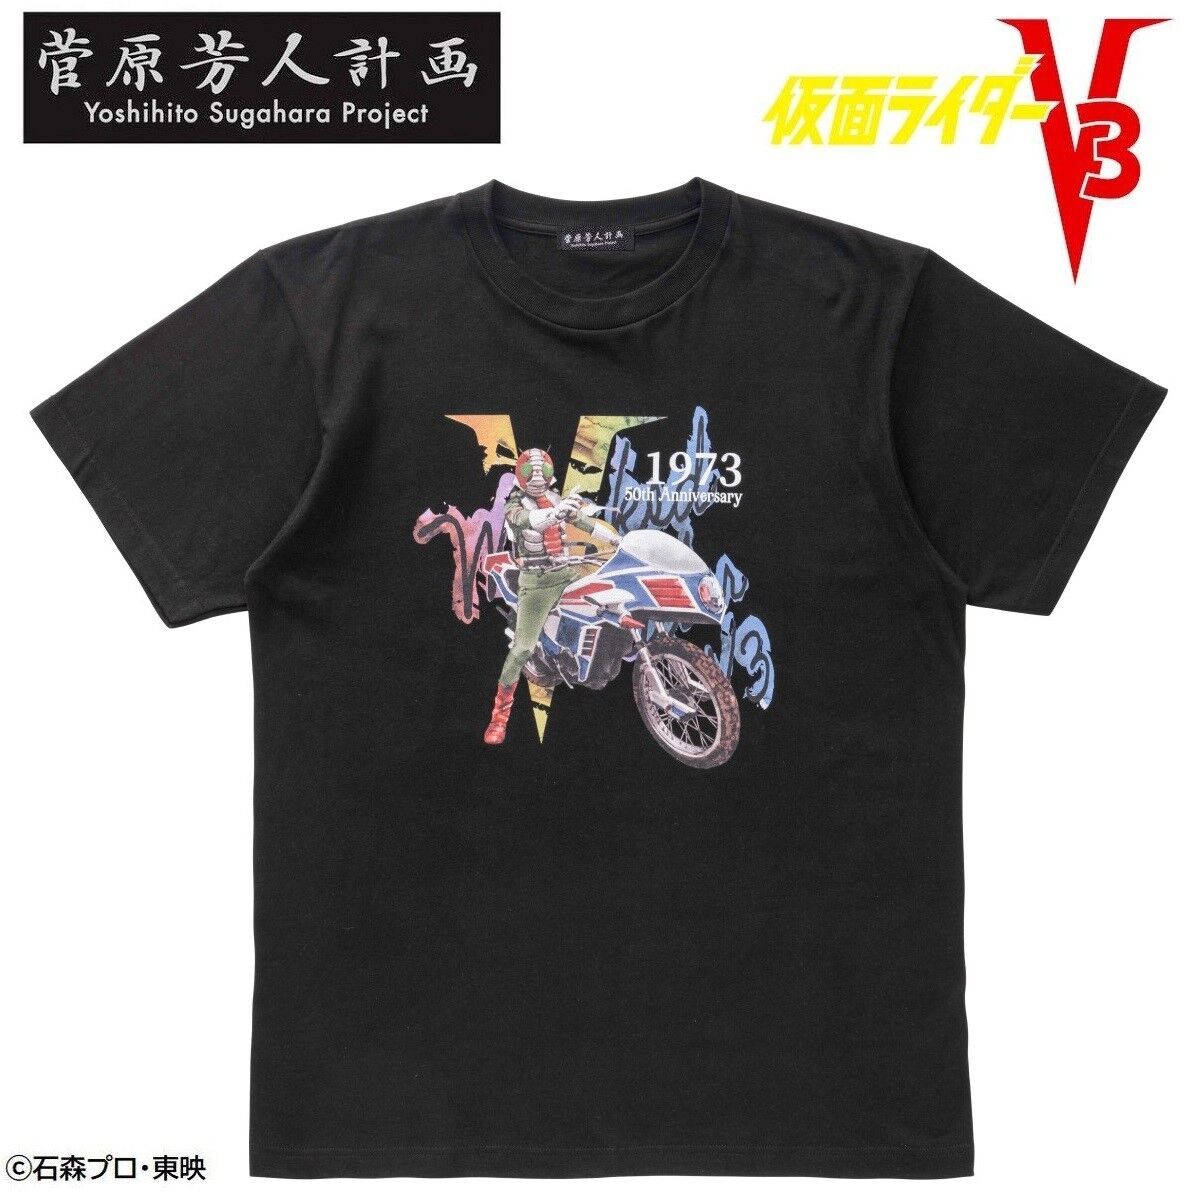 菅原芳人計画 仮面ライダーV3 50th Tシャツ | 仮面ライダーV3 